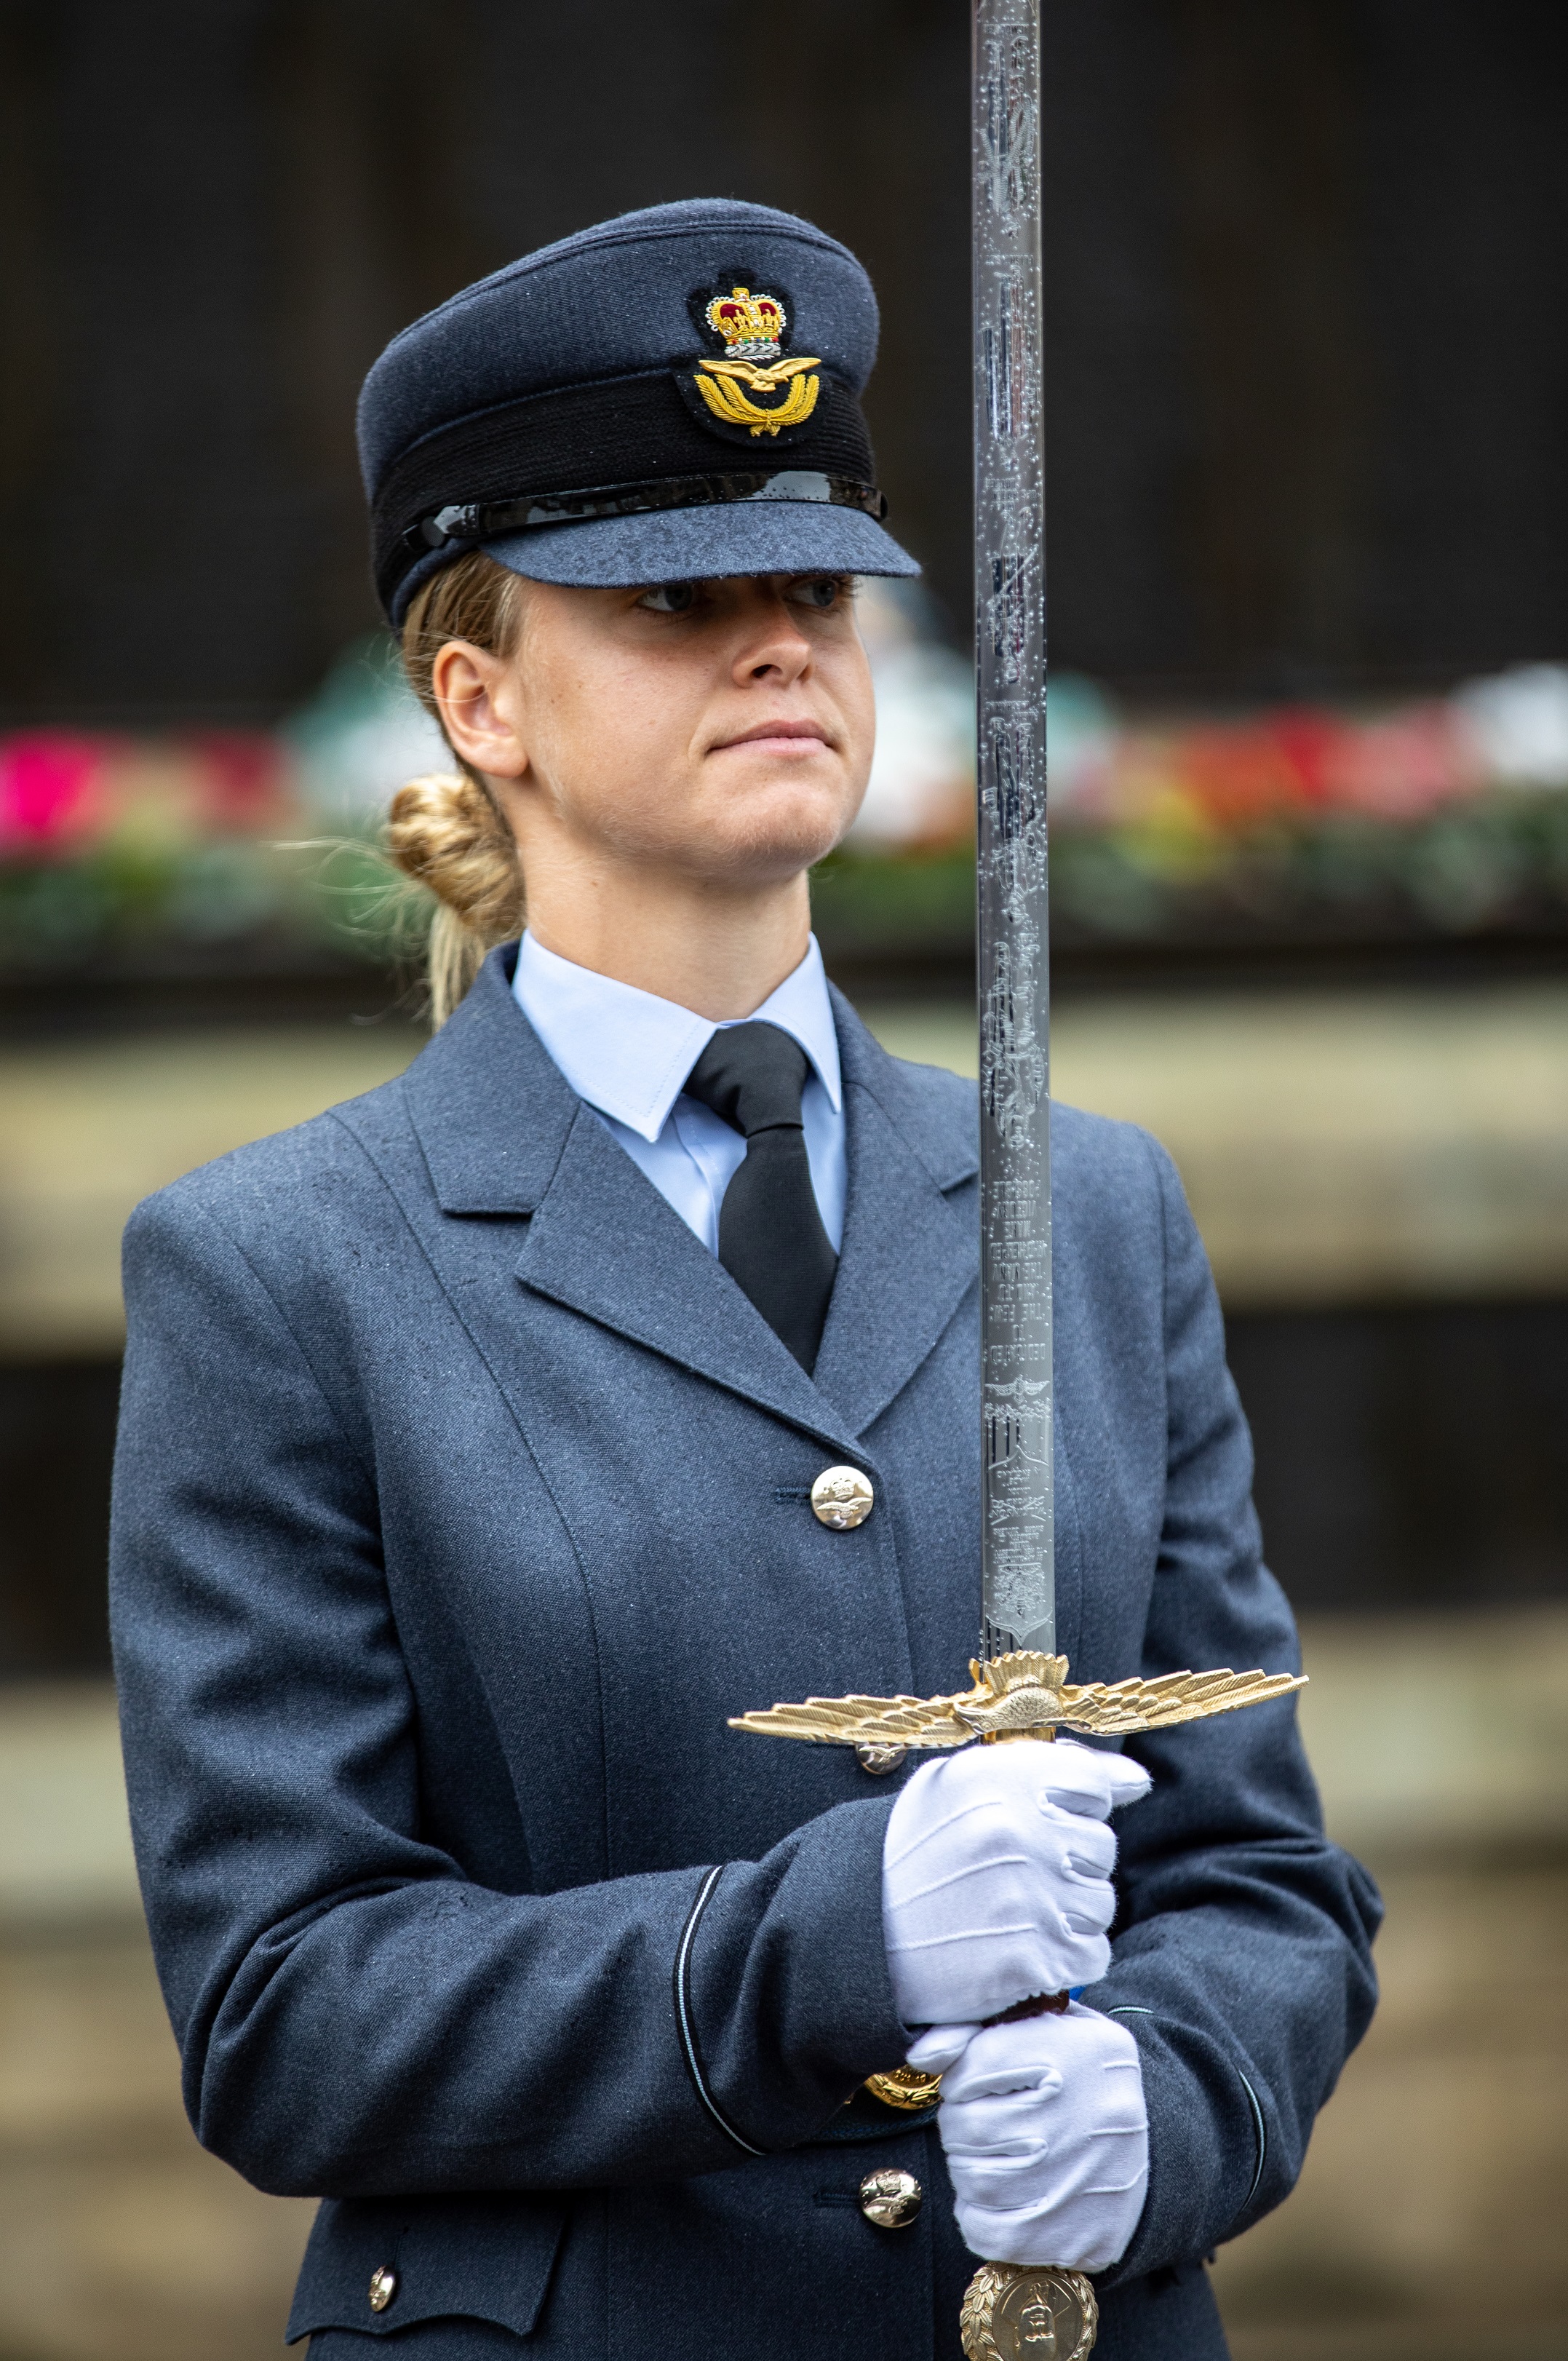 Pilot Officer Jeorgia Carr, the ceremonial sword bearer